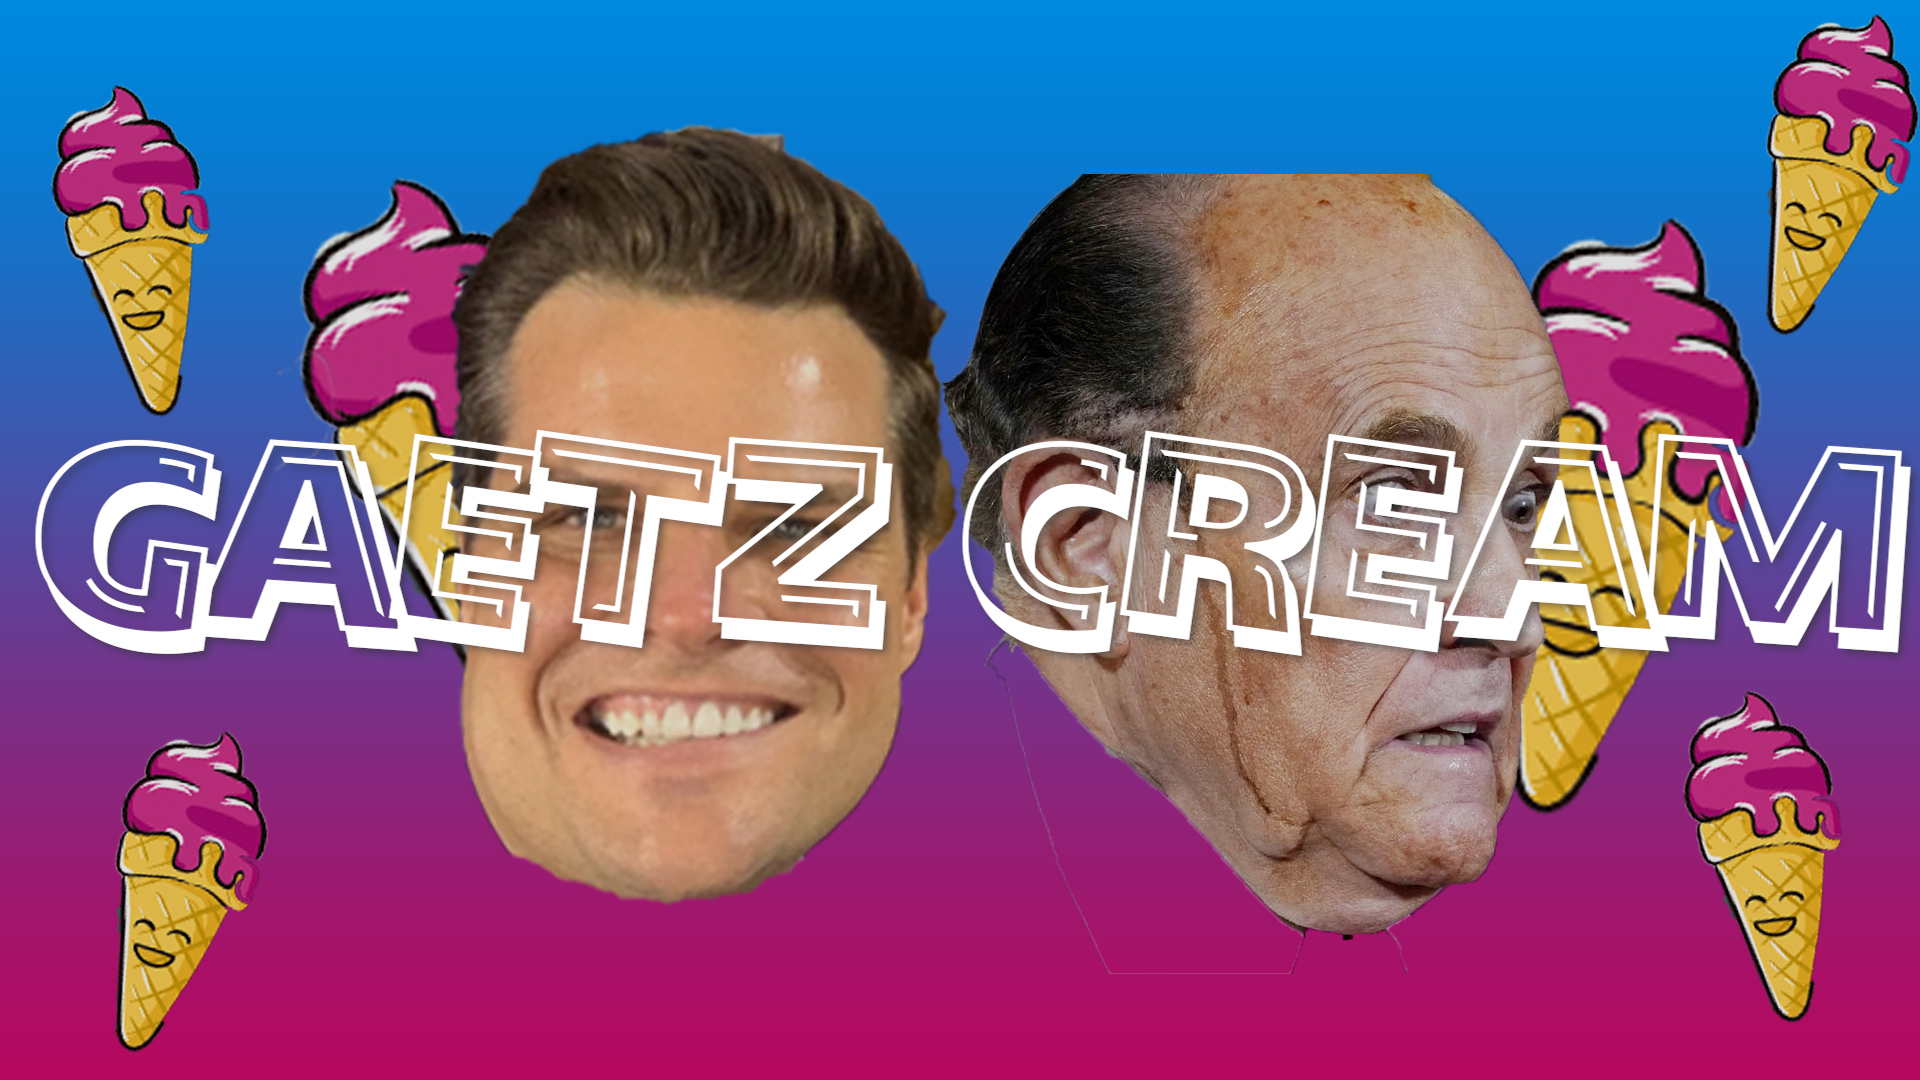 Gaetz Cream